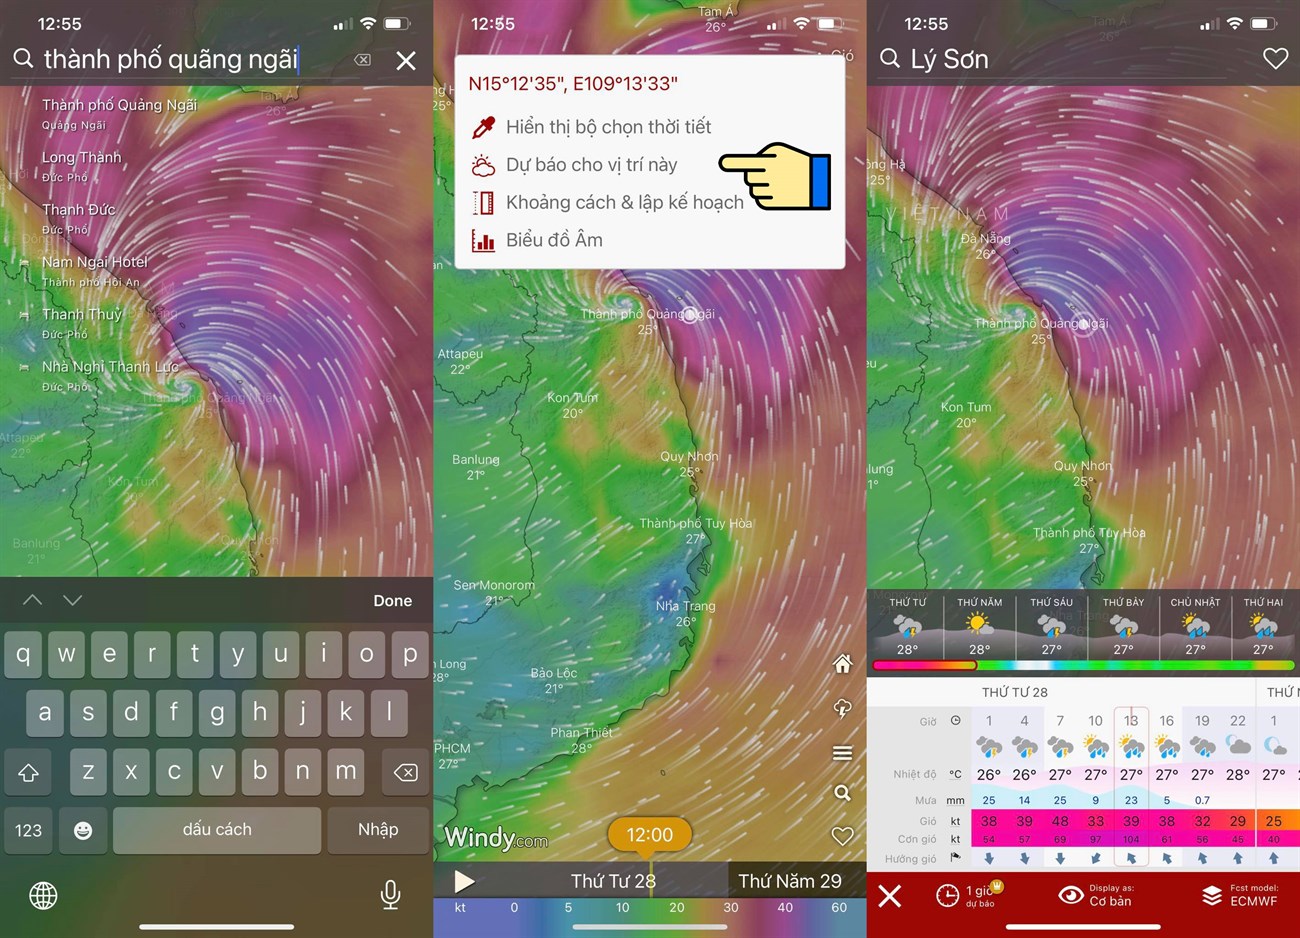 Cách xem bản đồ dự báo thời tiết, bão lũ, thiên tai Việt Nam trực tiếp qua vệ tinh > Xem dự báo thời tiết cho vị trí cần tìm